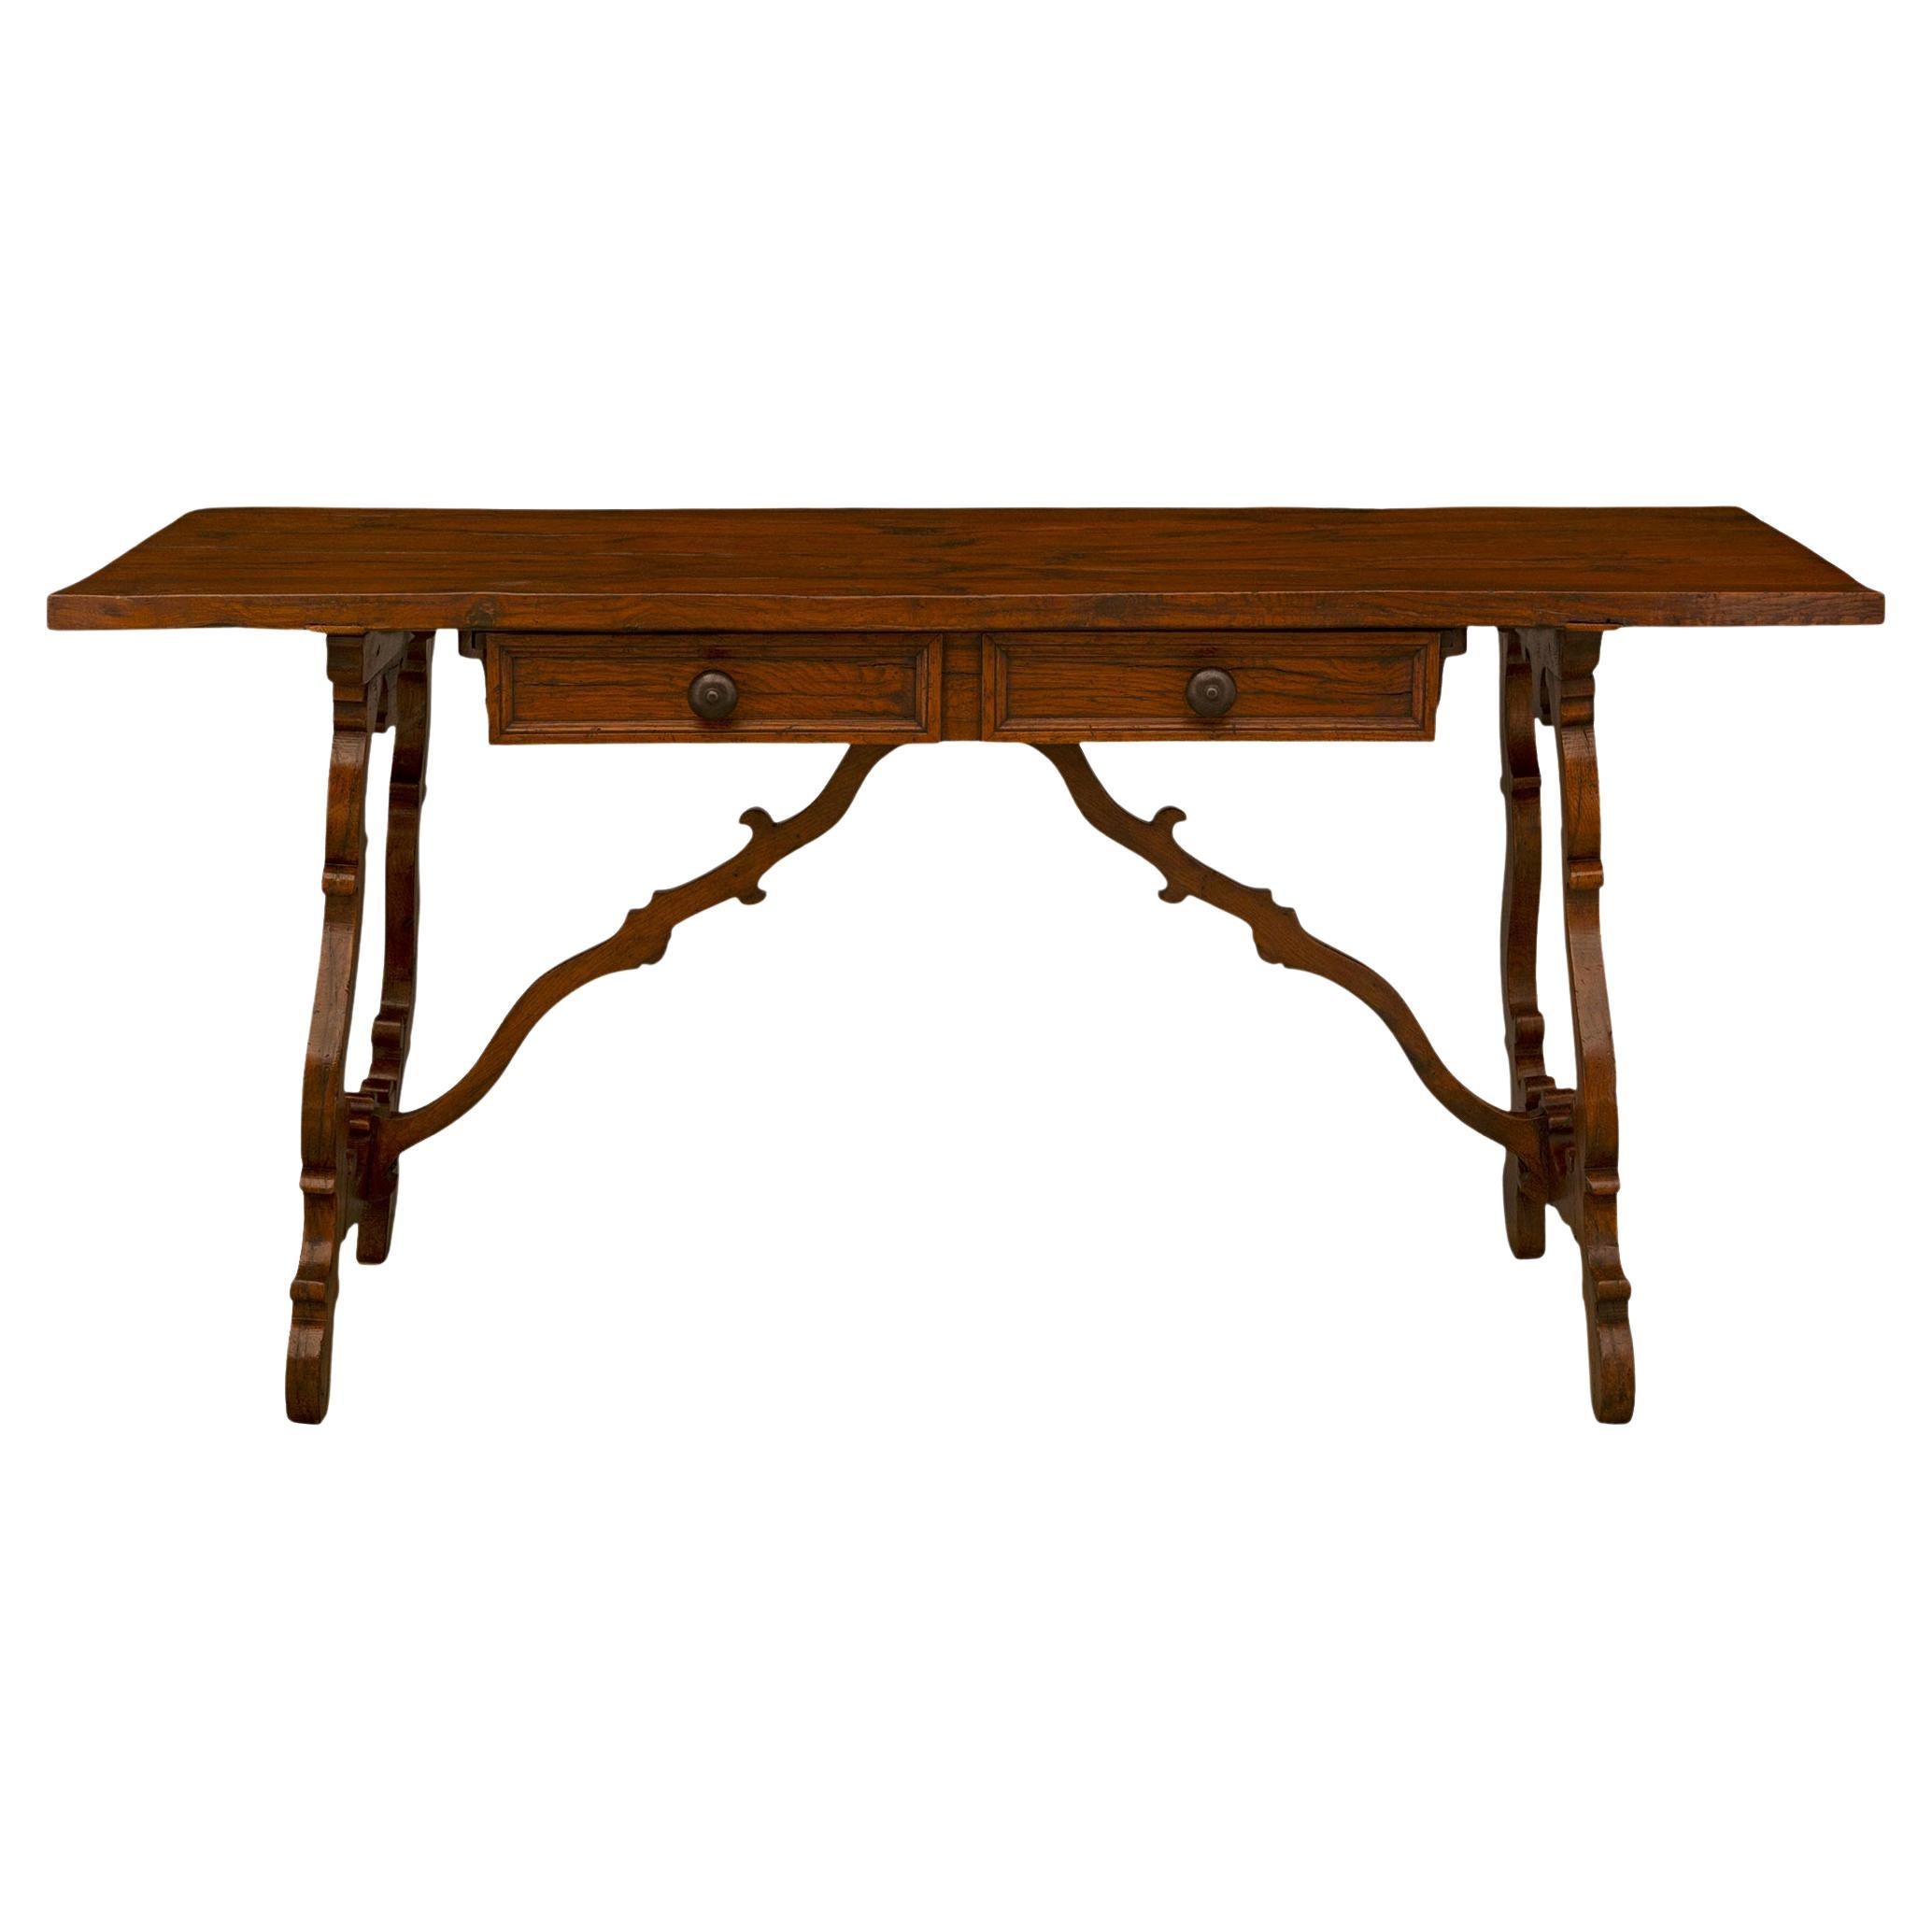 Ein attraktiver italienischer Eichenholz-Tisch/Schreibtisch aus dem 19. Jahrhundert